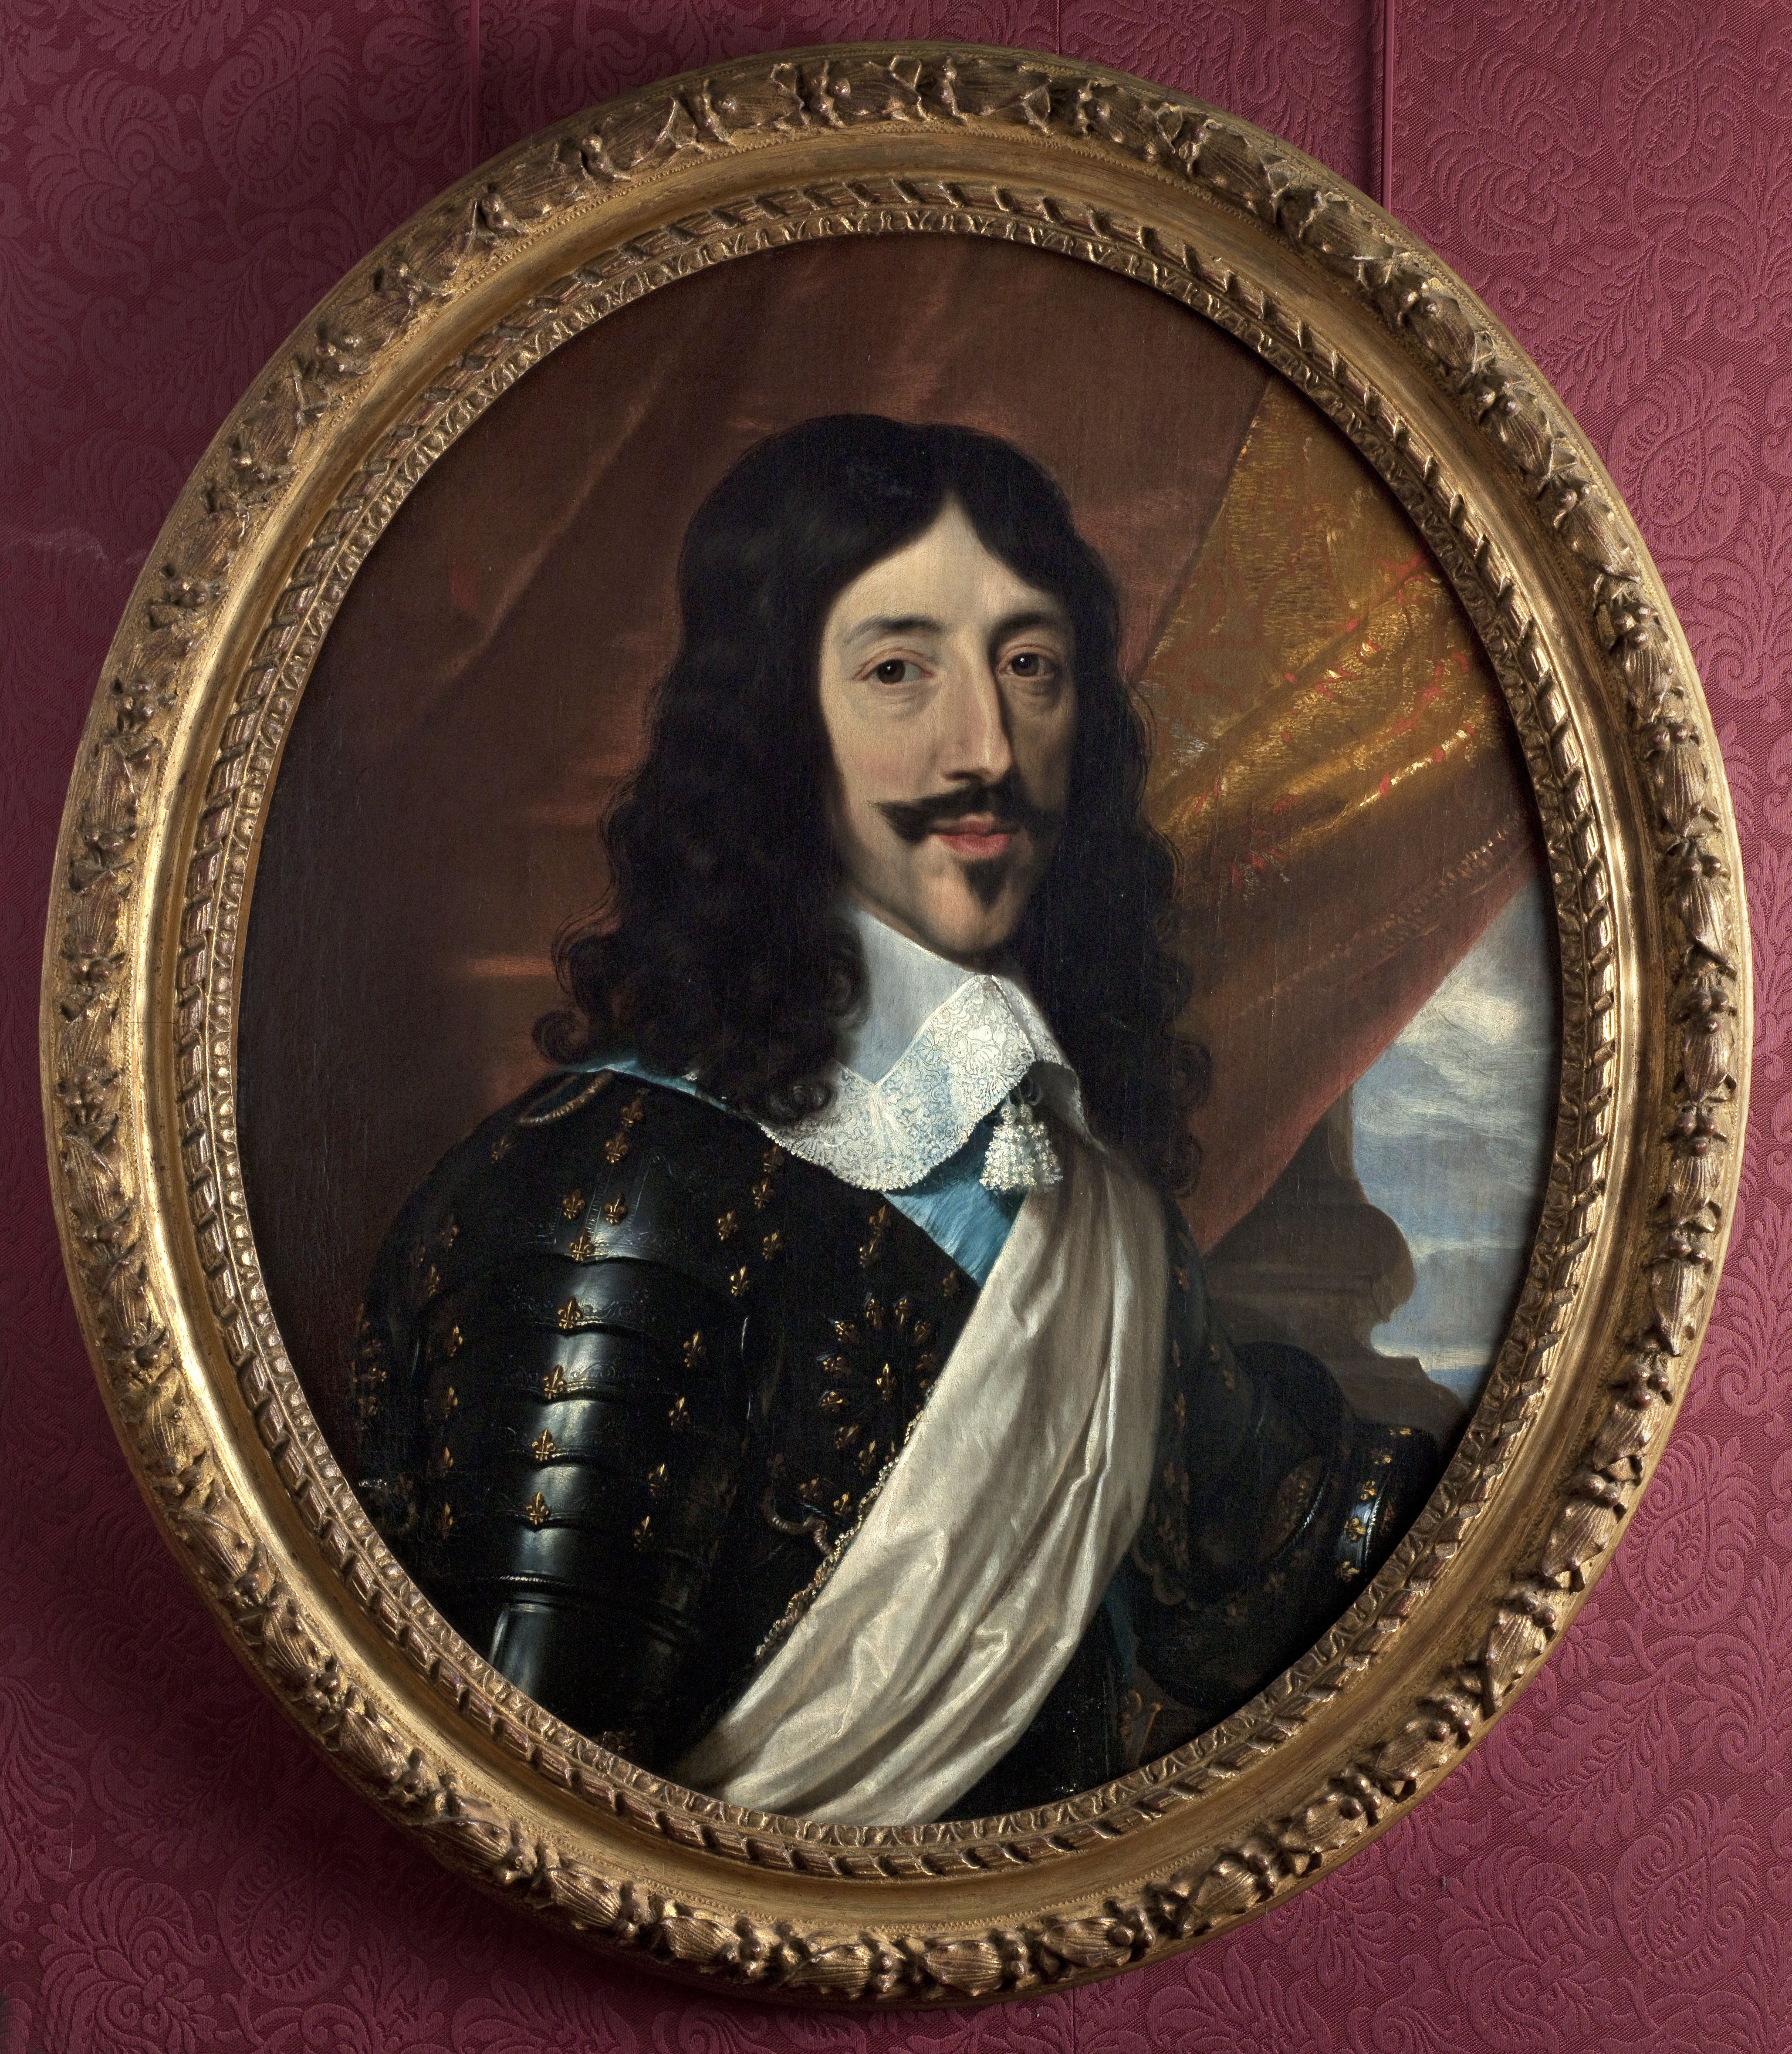 Portrait of Louis XIII